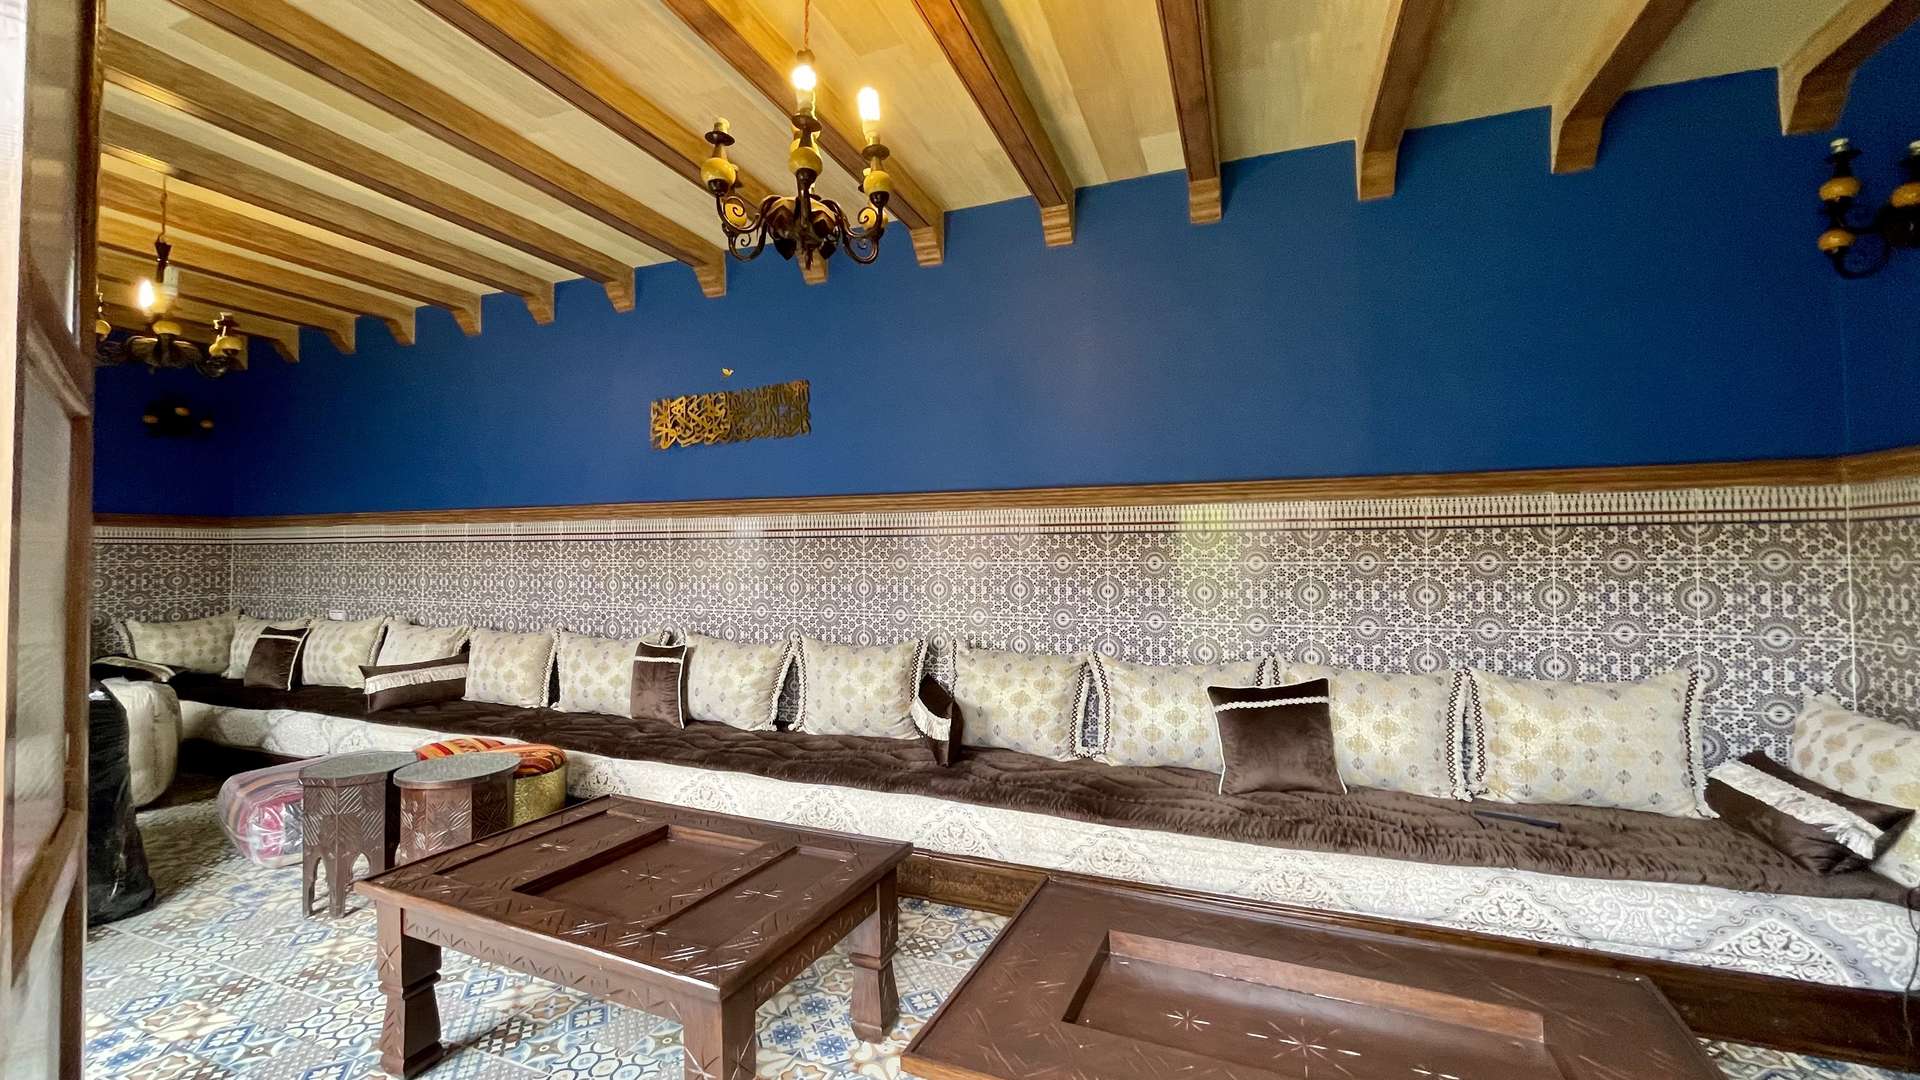 Vente,Villa,Zone Agafay: Villa 7 chambres sur 1620M2 avec piscine privée et Hammam. Idéalement pour maison d'hôtes ,Marrakech,Route d’Agadir